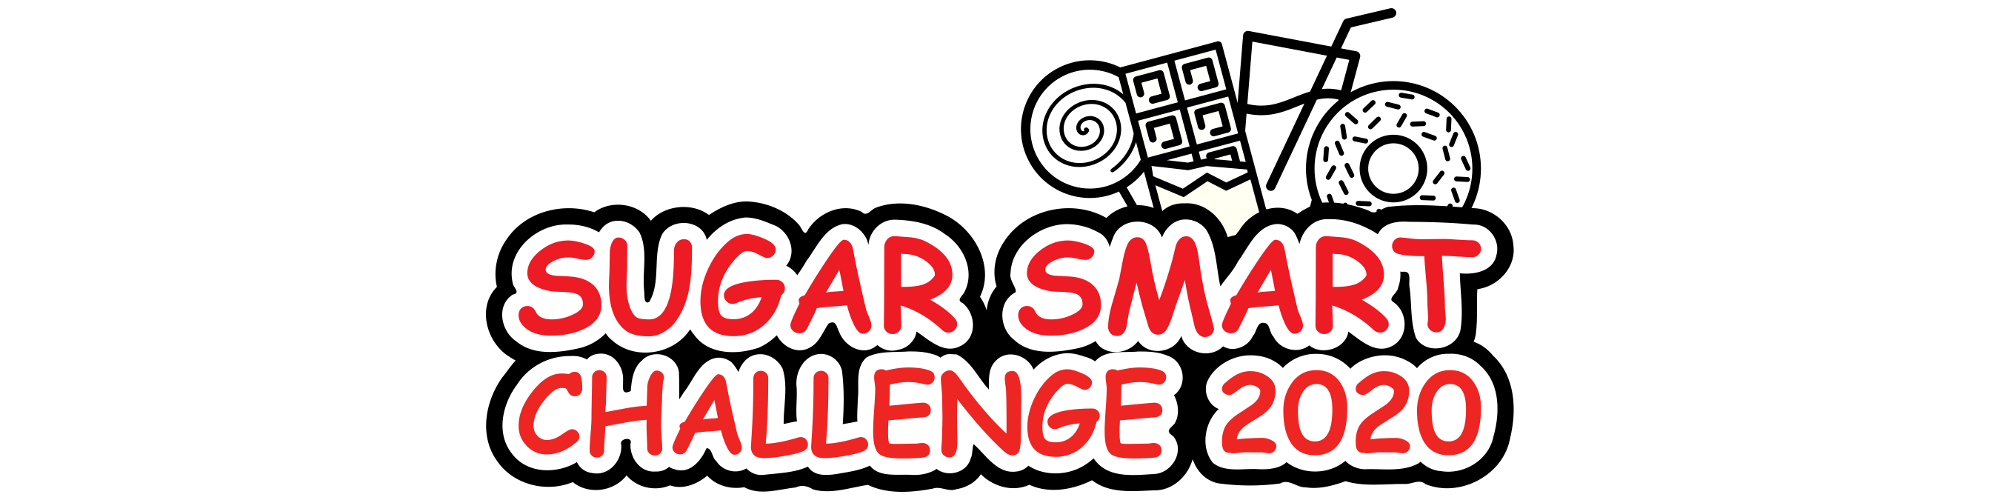 Sugar Smart Challenge 2020